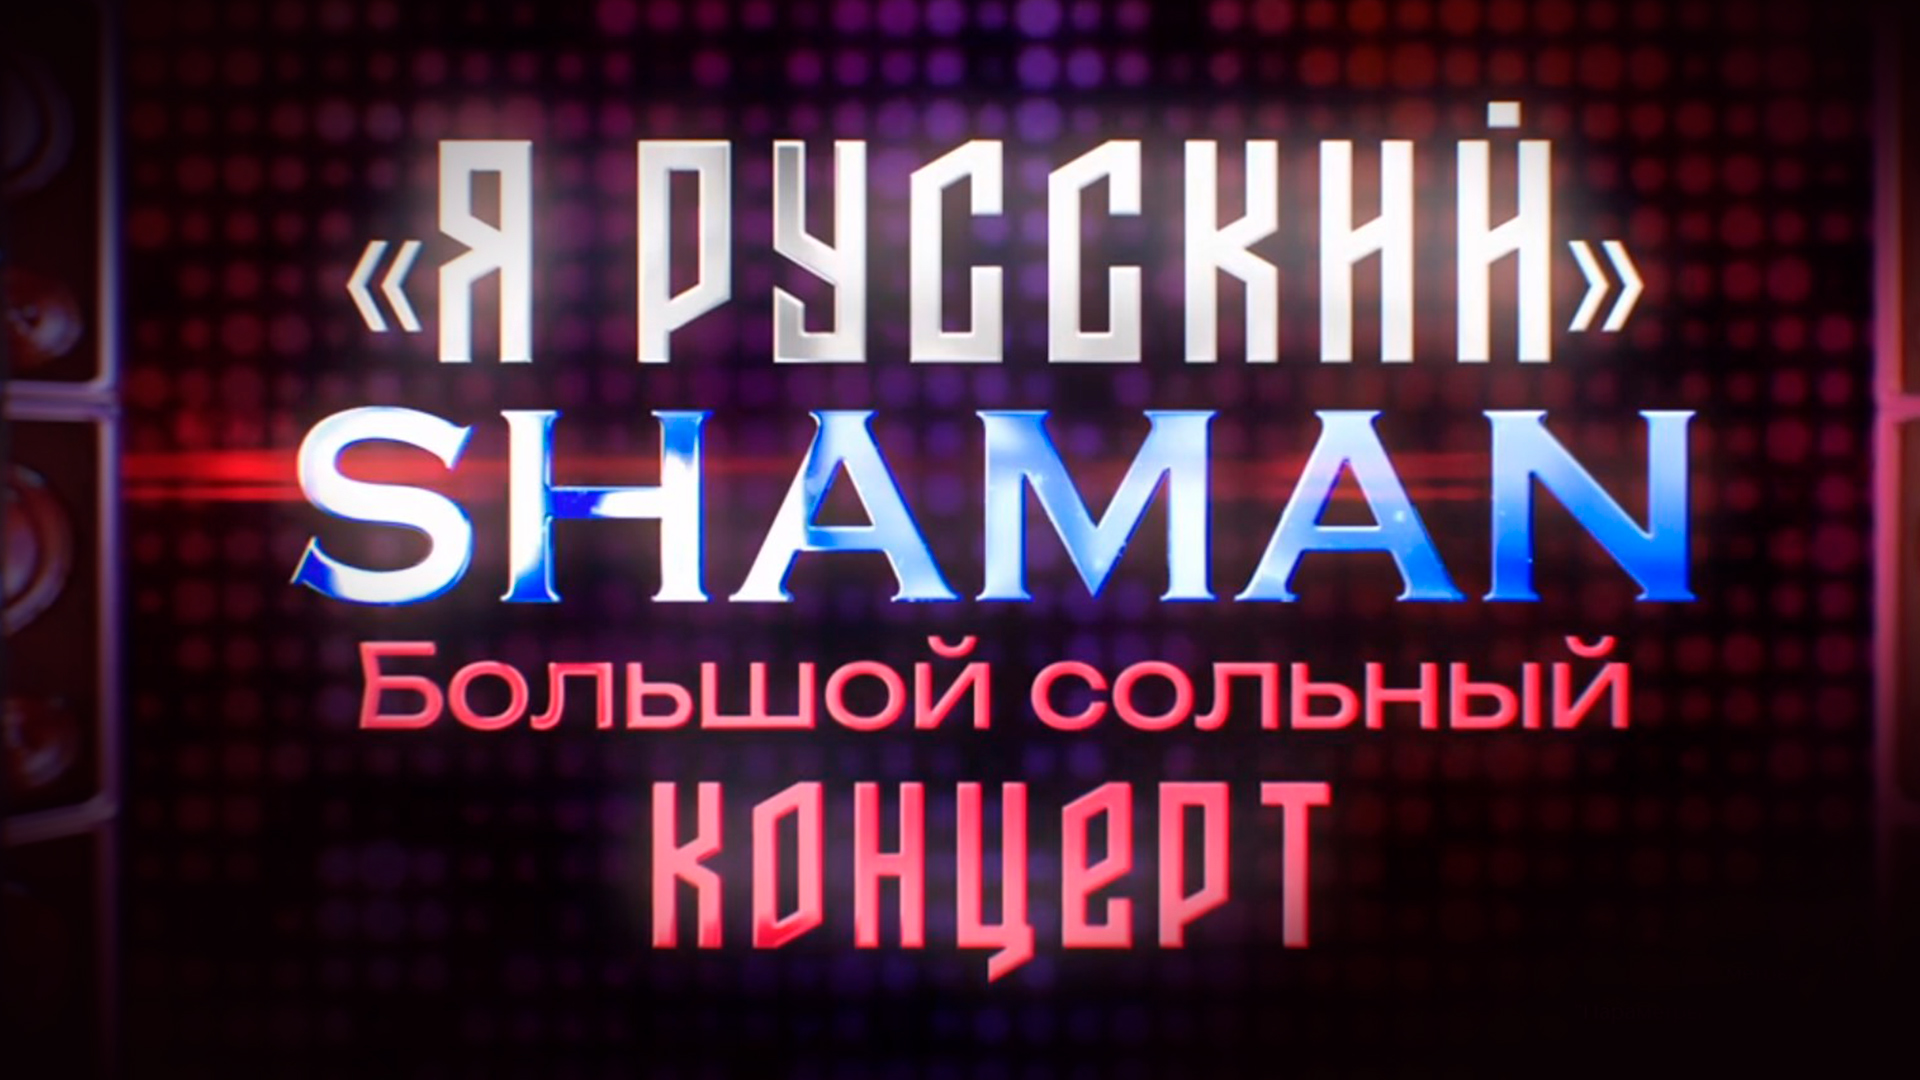 «Я русский». Shaman. Большой сольный концерт